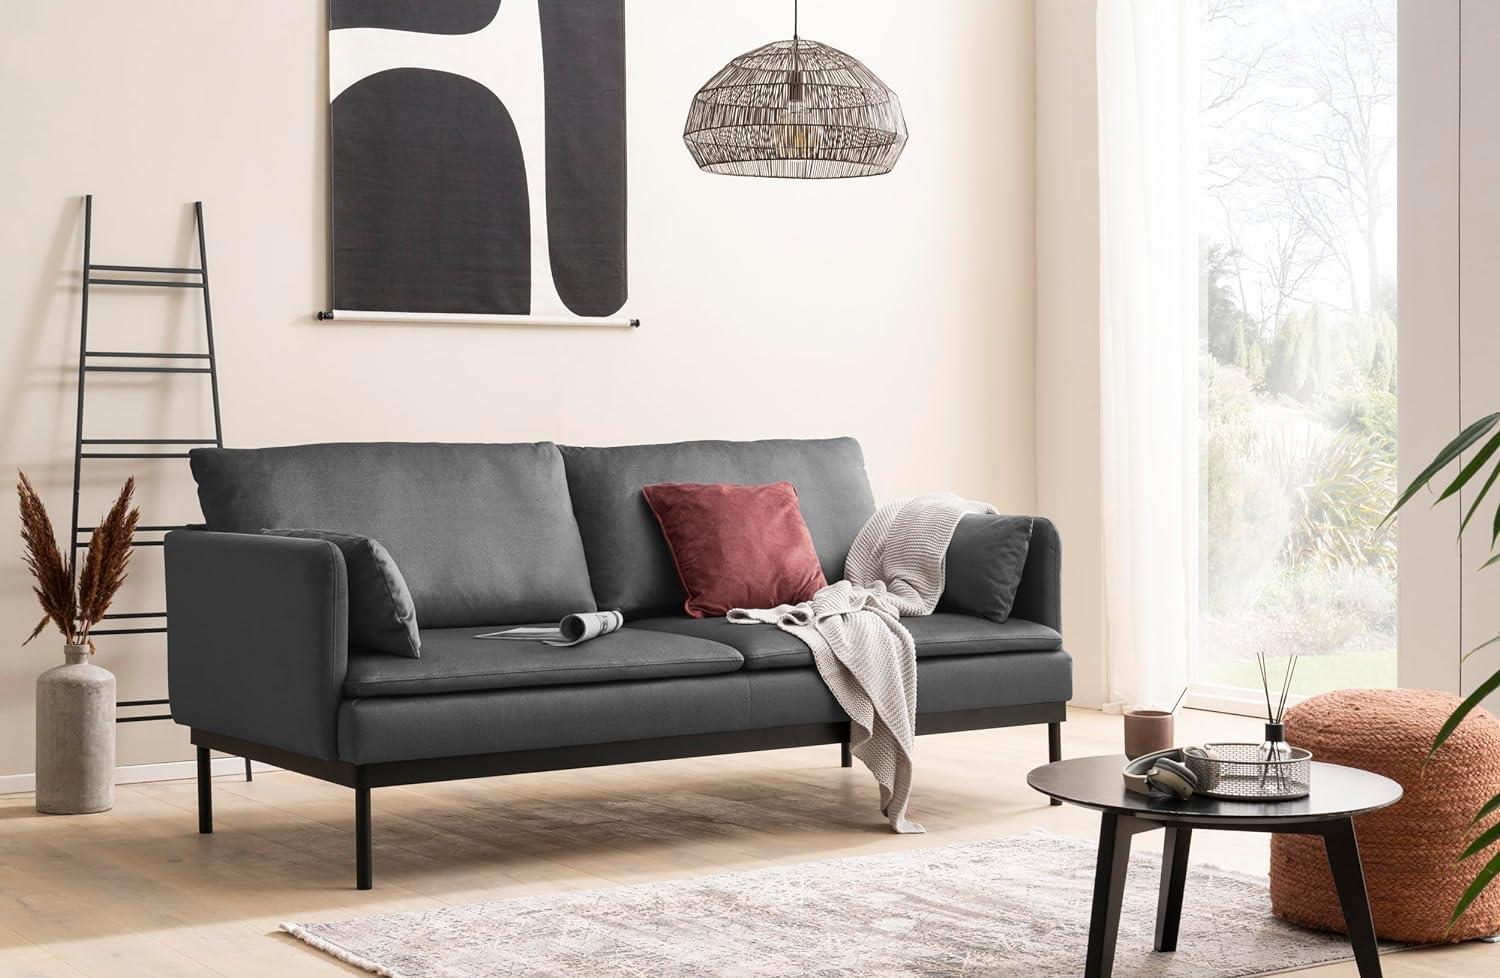 Traumnacht Lyon Sofa 2-Sitzer im modernen Loft Design, grau, produziert nach deutschem Qualitätsstandard, leichter Aufbau Bild 1